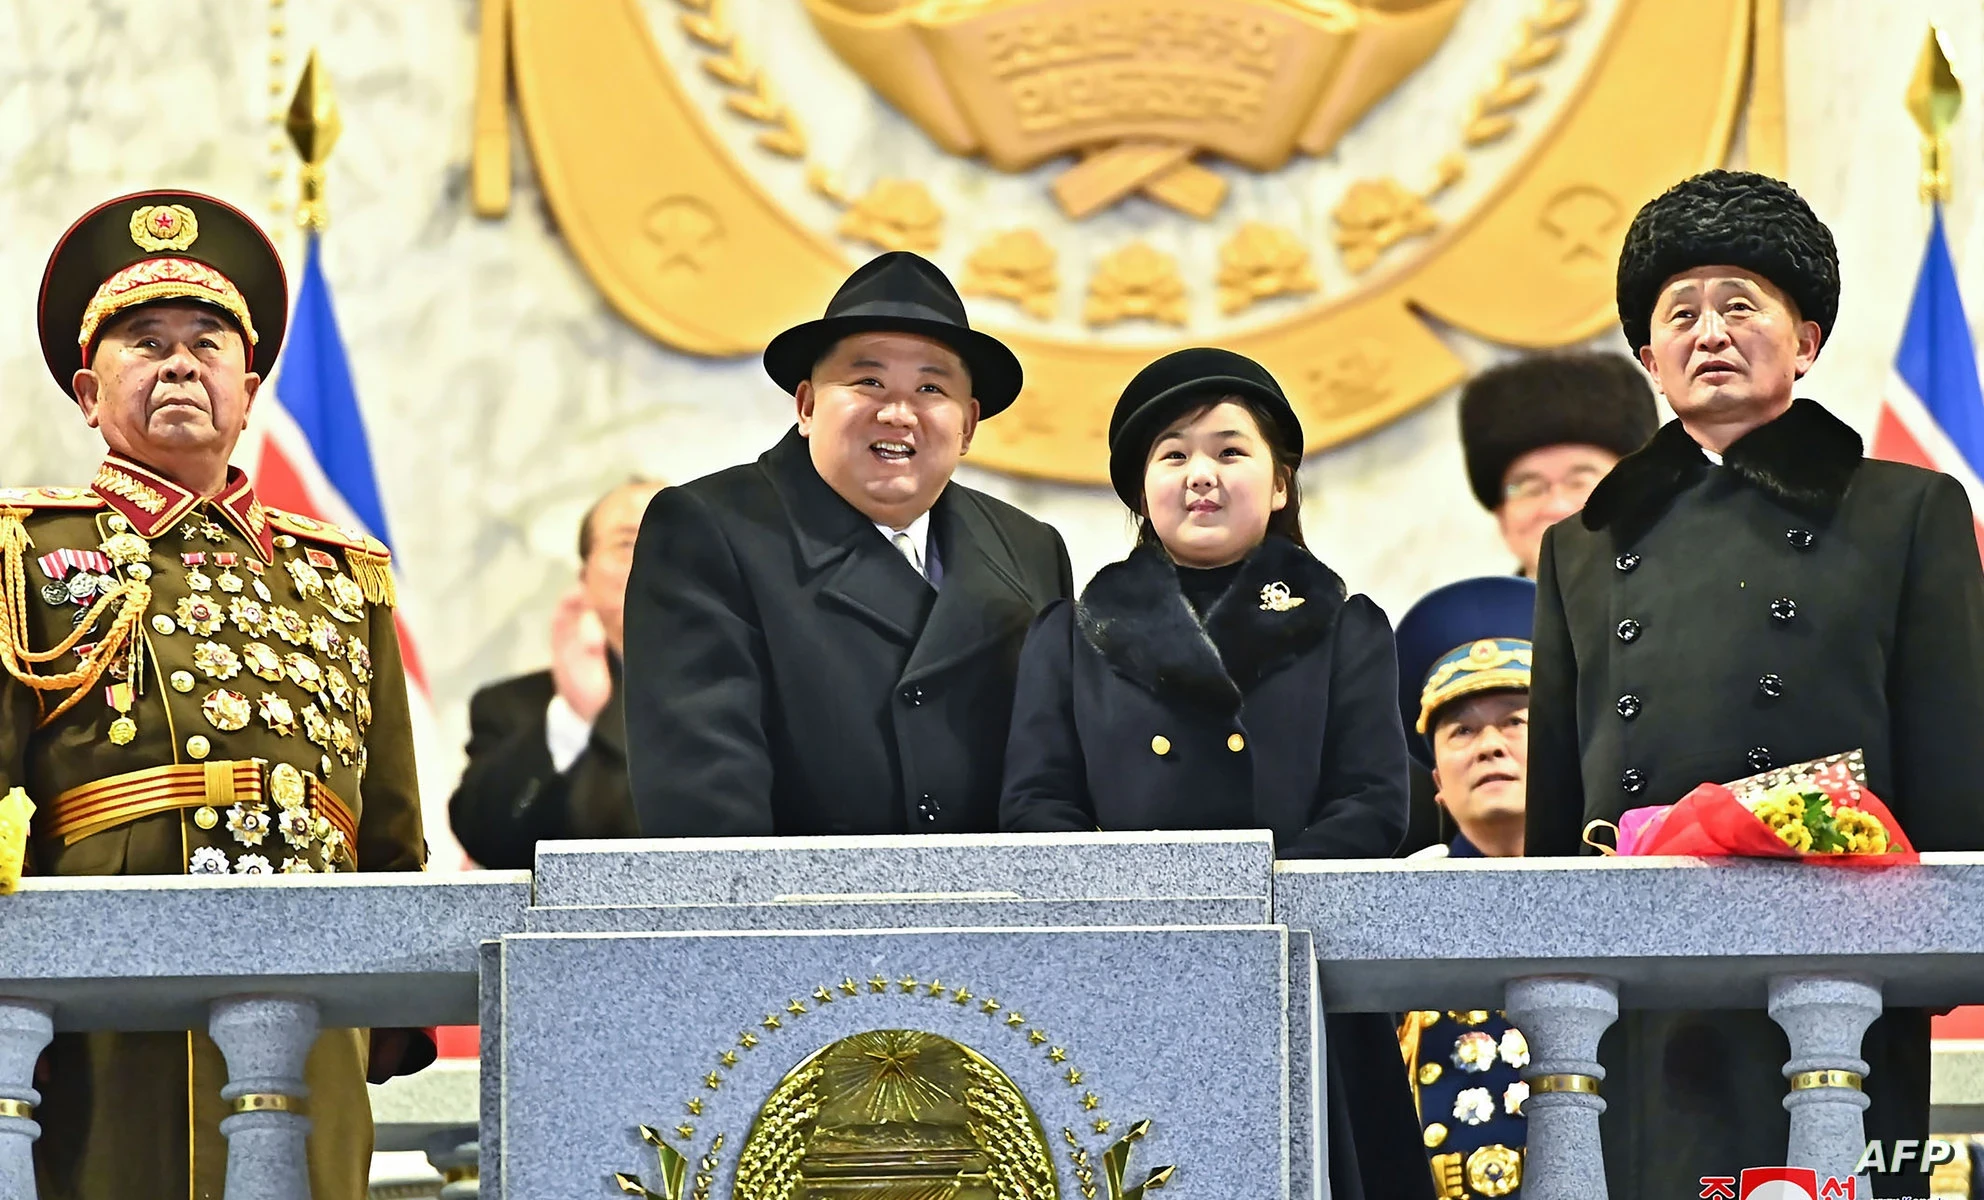 توقعـات المـخابرات الكورية الجنوبية حول خليفة زعـيم كـوريا الشمالية